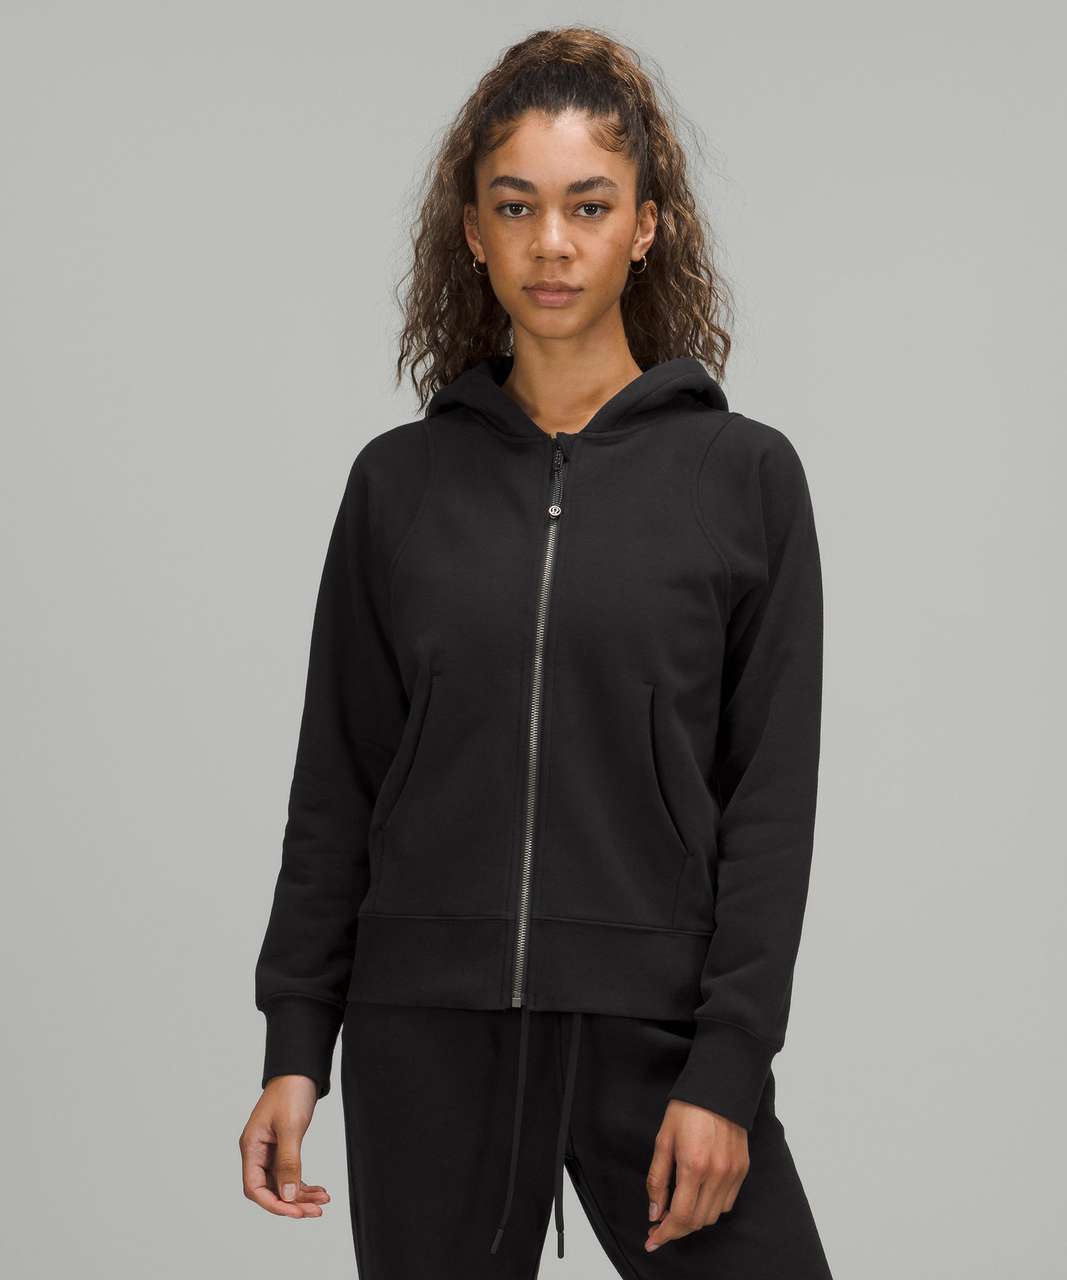 Lululemon Black Printed Full-Zip Seestshirt Jacket w/hood Size 4